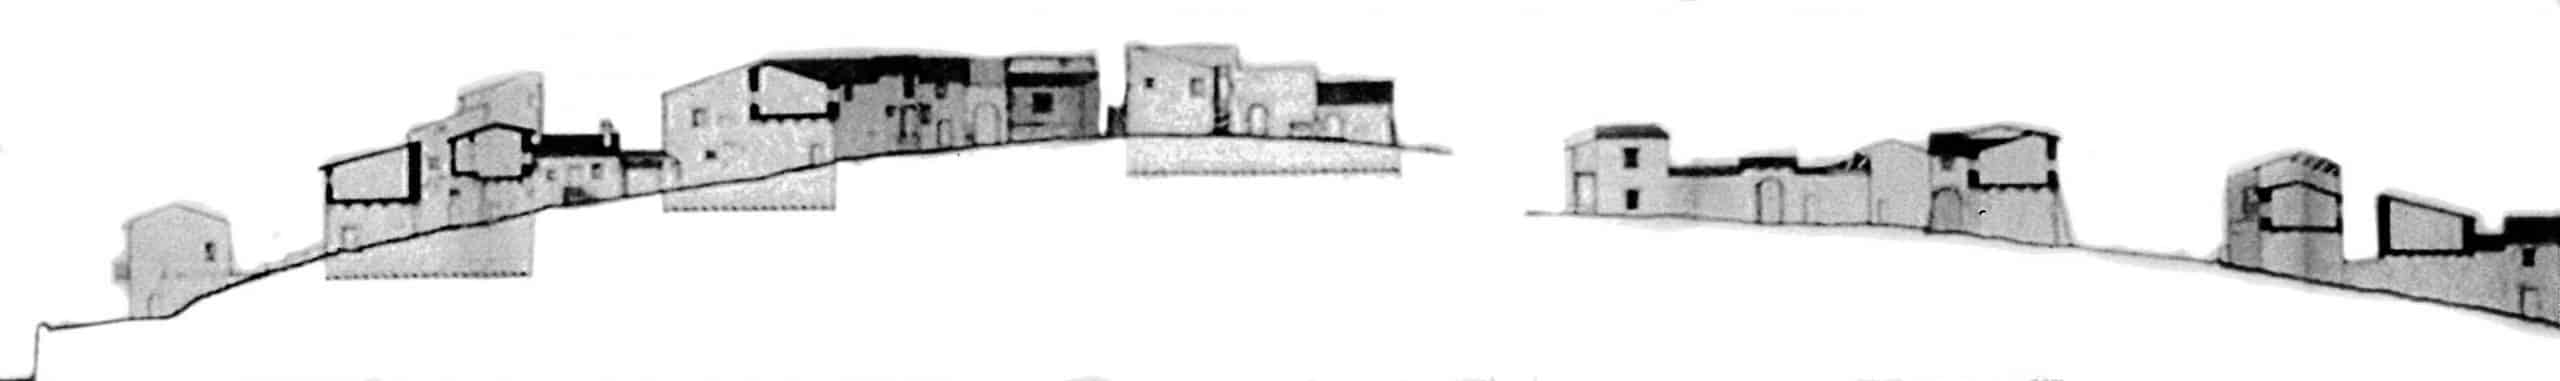 10 - Piano di Recupero del patrimonio edilizio esistente del Comune di Vallo di Nera (PG); con L. Triggiani e S. Terenzi - Profili della località Meggiano